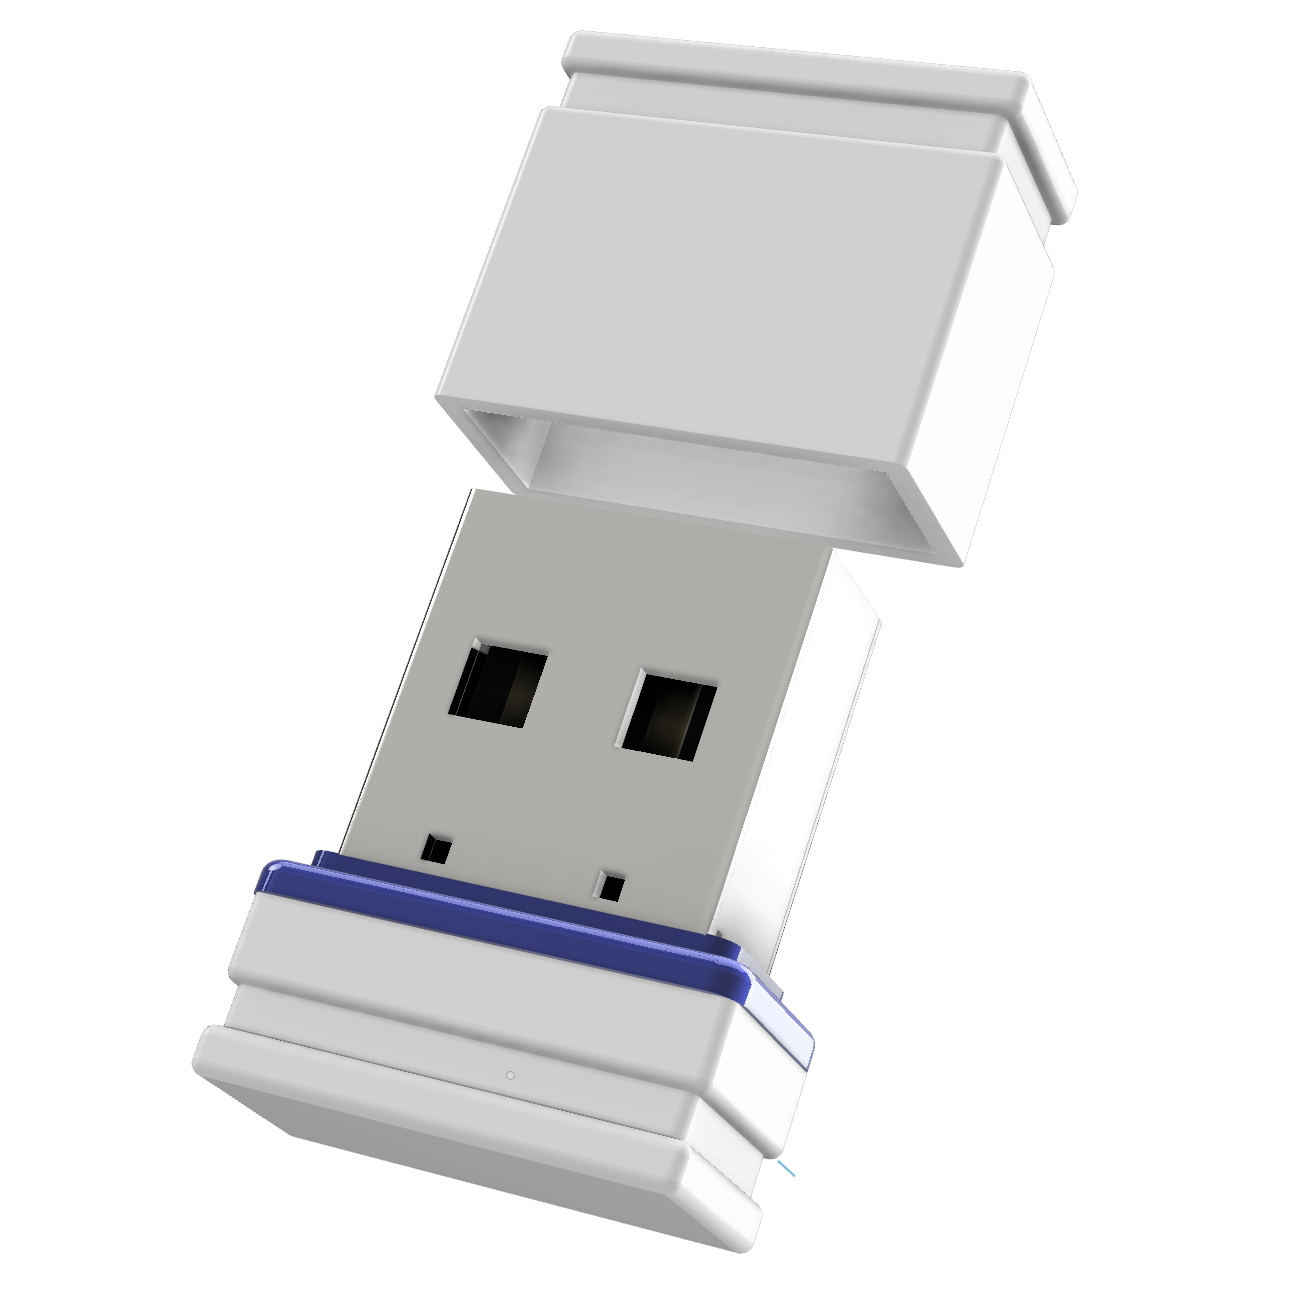 GB) (Weiss/Blau, ®ULTRA USB-Stick GERMANY 1 Mini USB P1